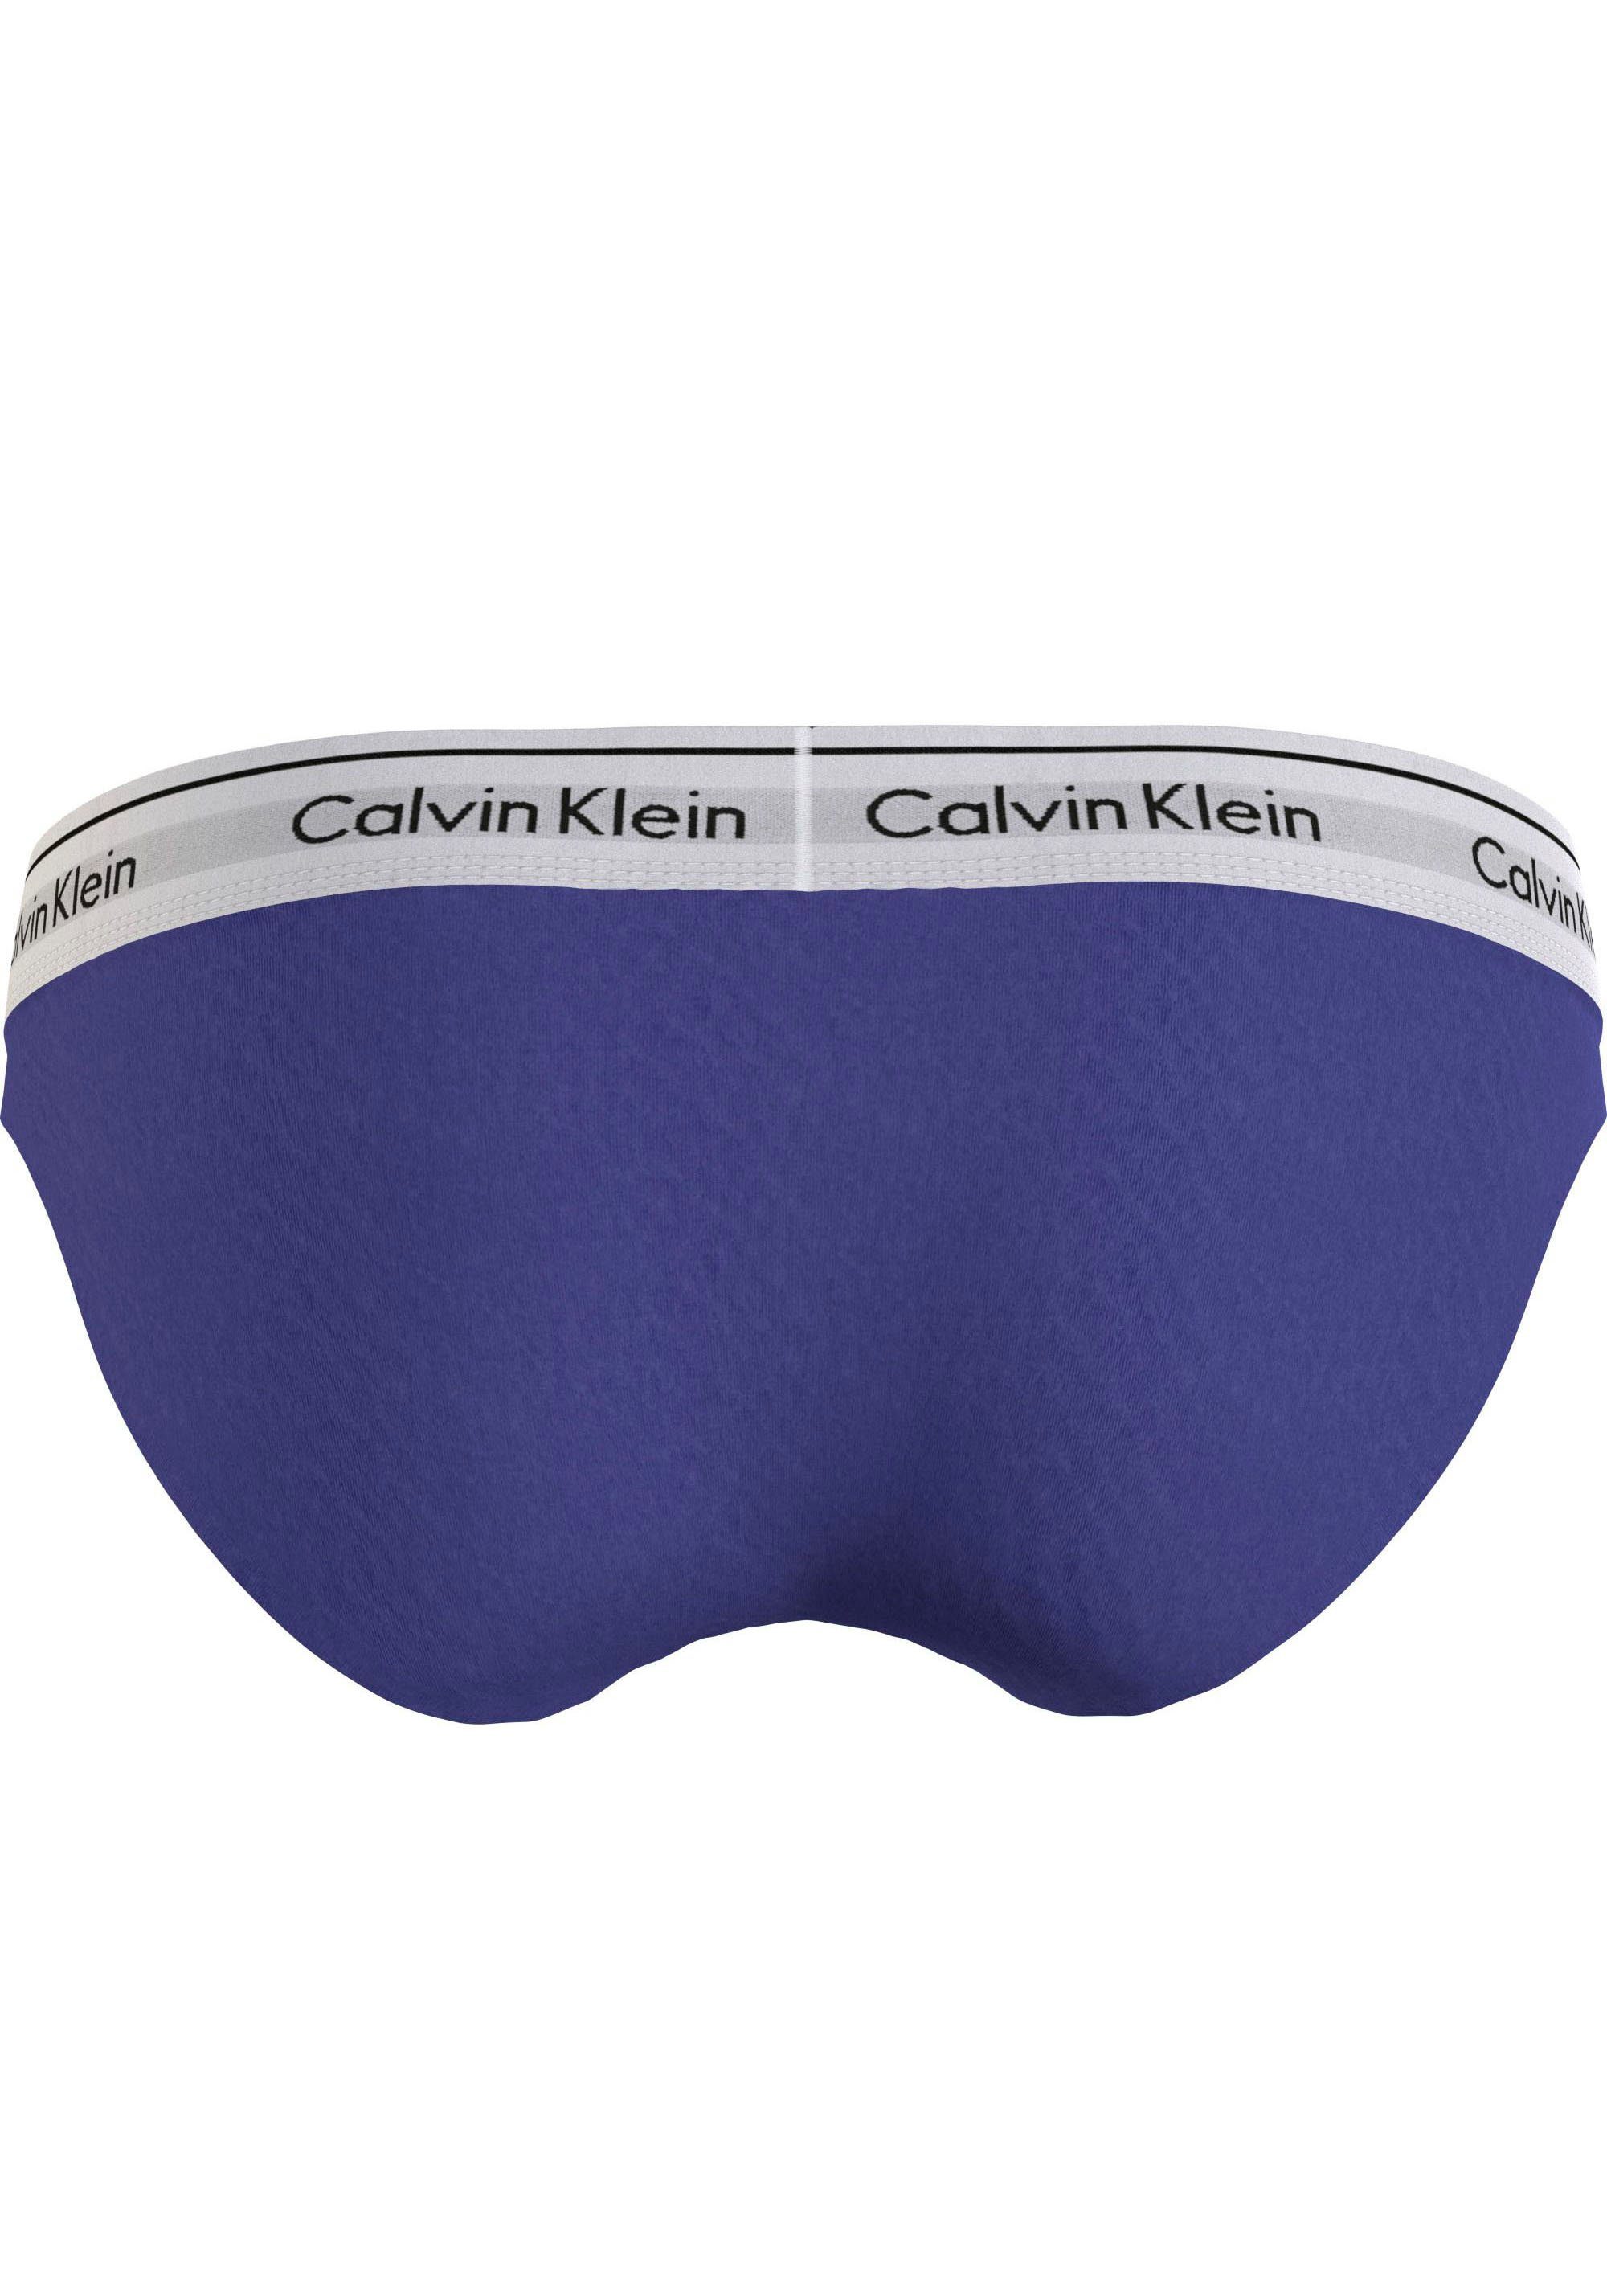 Calvin Klein Underwear Bikinislip BIKINI blau klassischem mit Logo